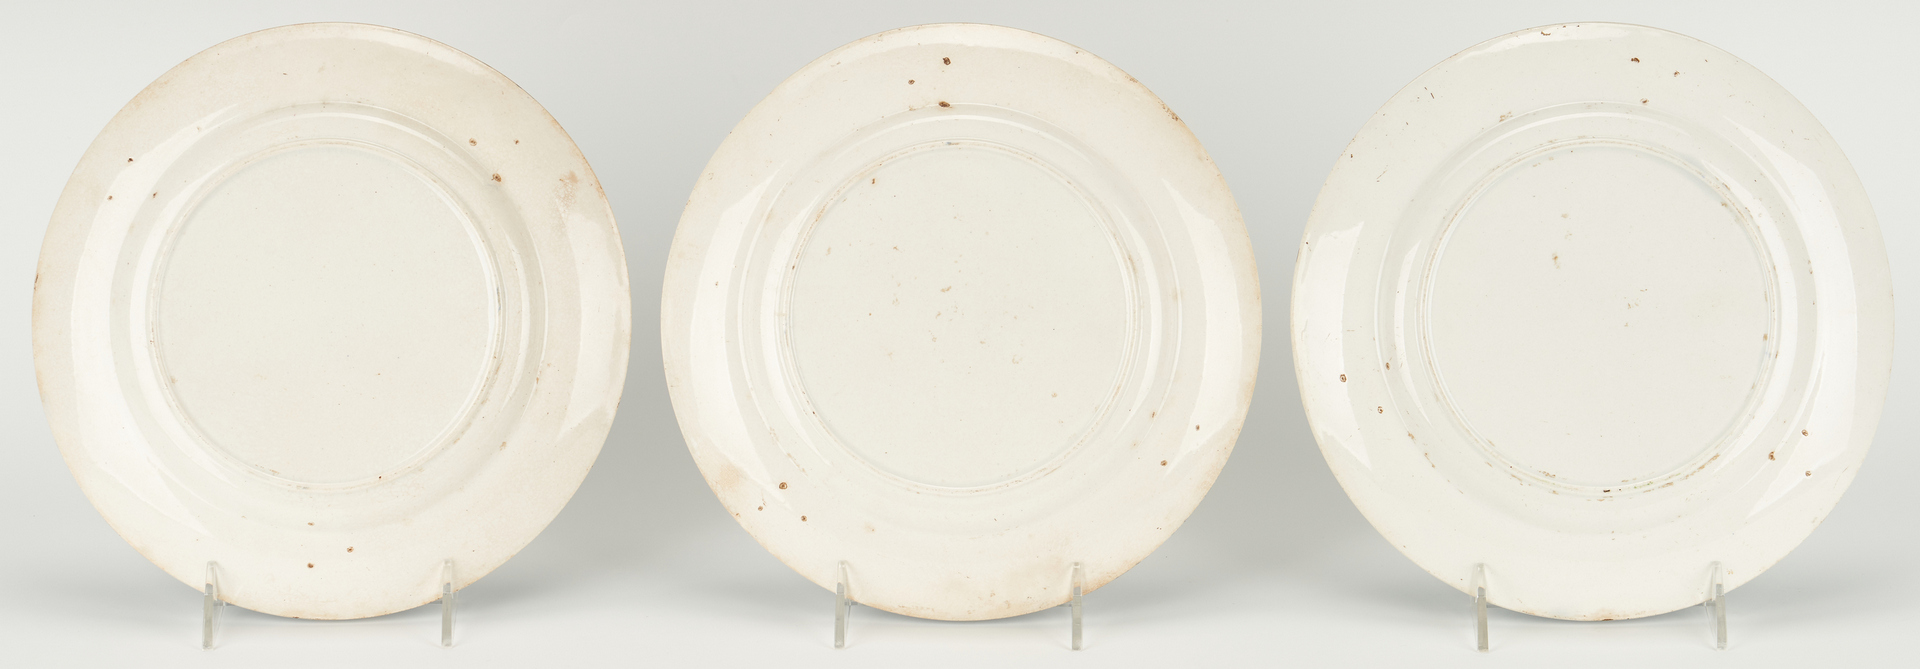 Lot 269: 6 Spatterware Plates, Puckett Family TN History